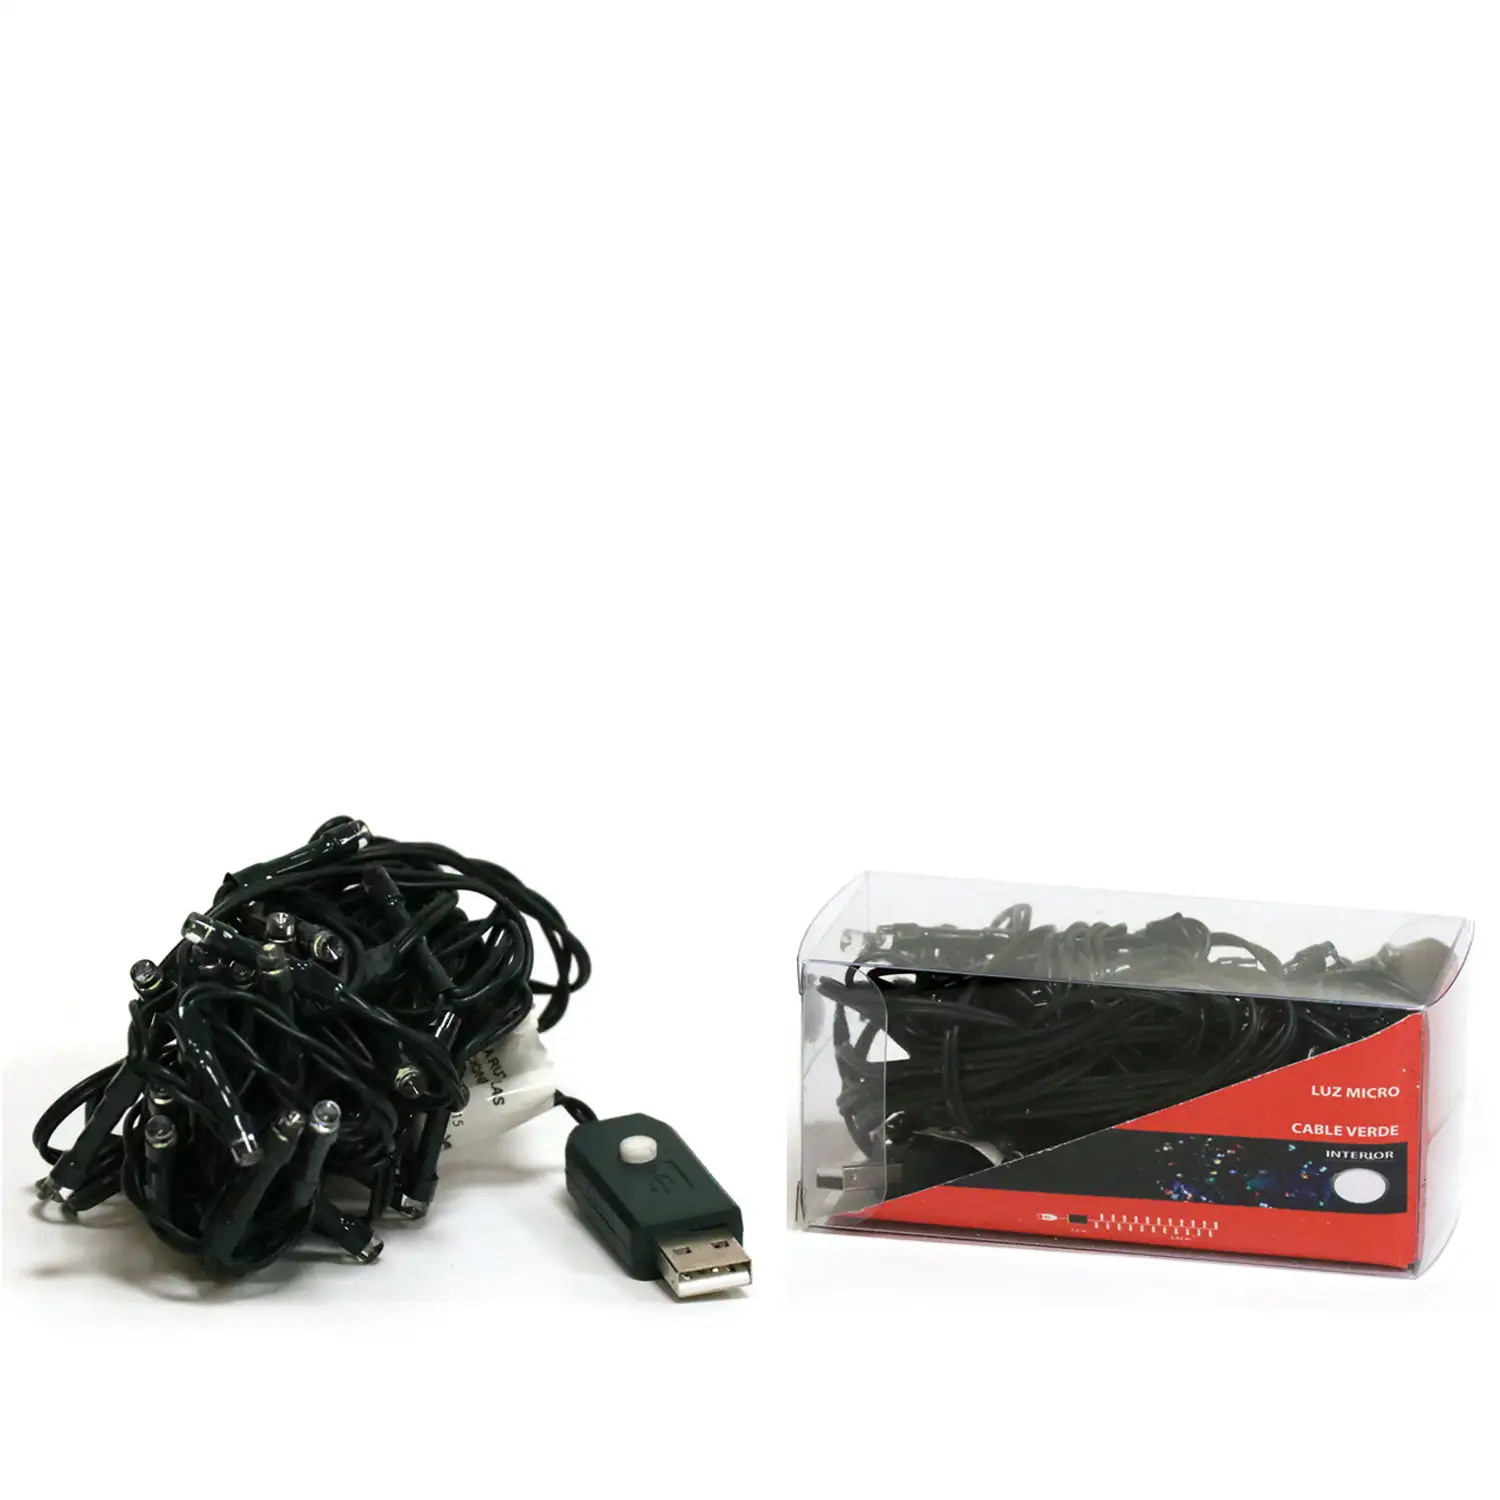 LUCES MICRO 50L LED COLOR CON USB CABLE VERDE INTERIOR 3 95M (24)